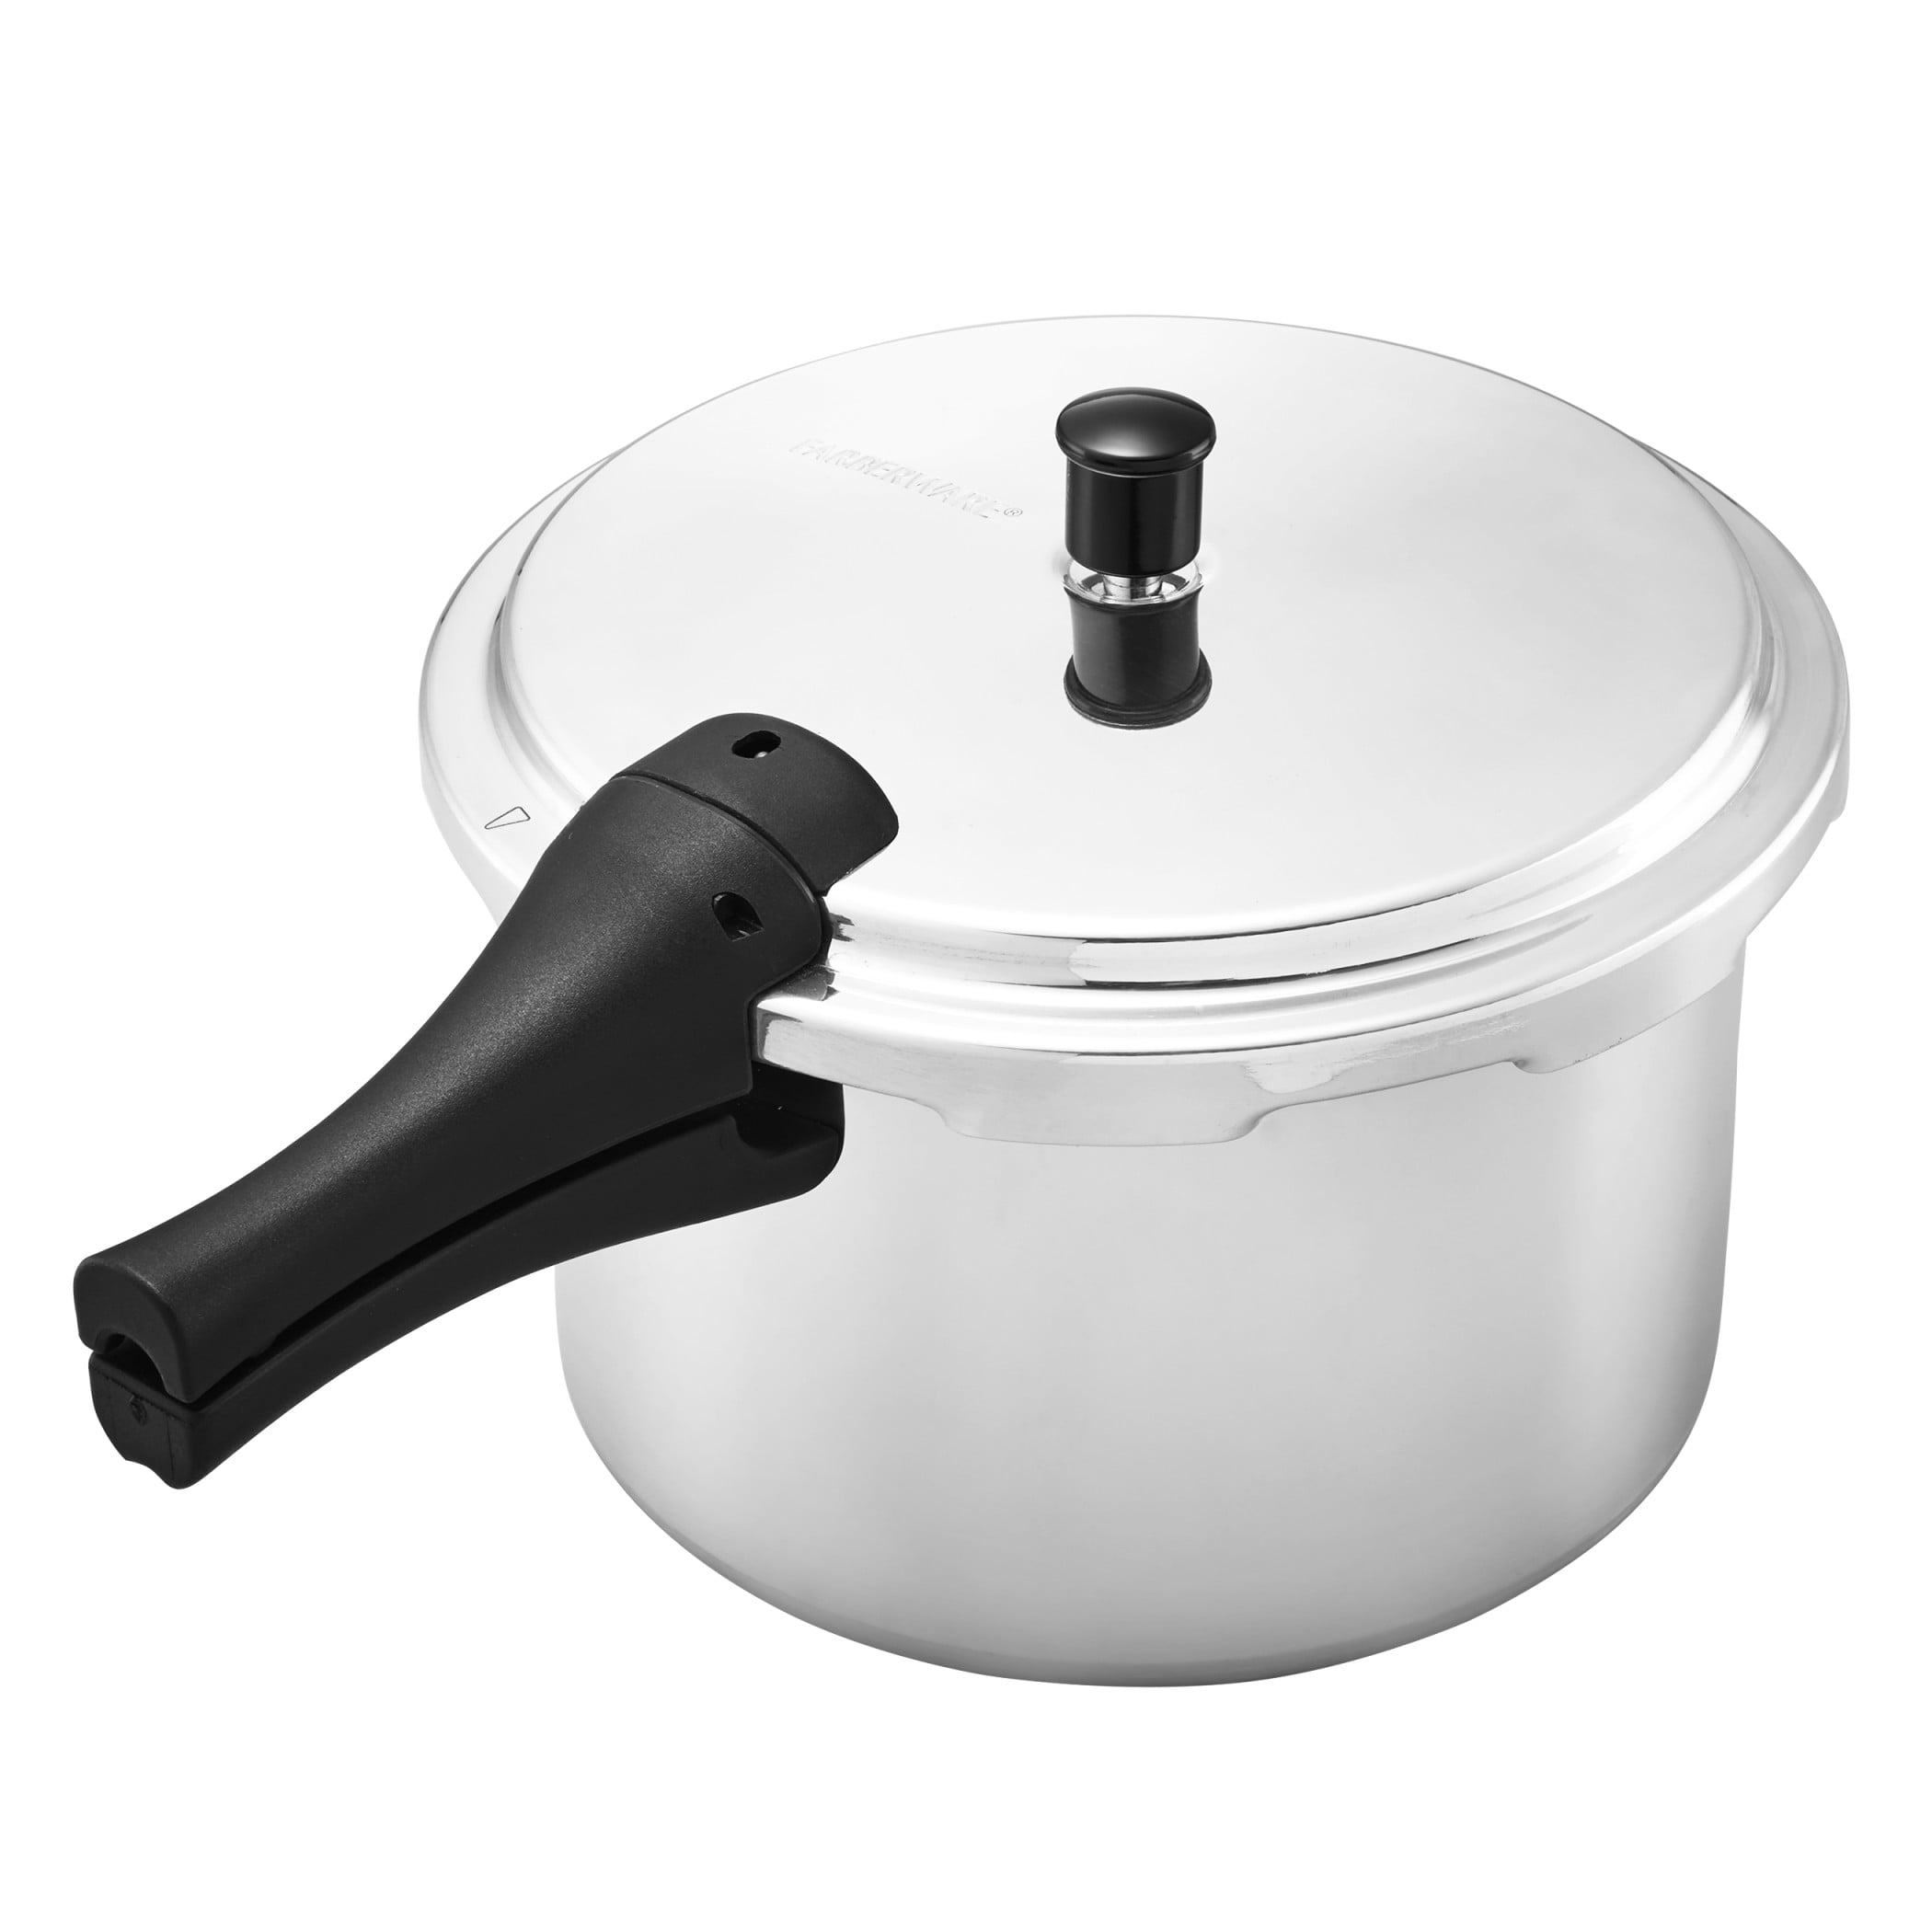 Farberware 6-Quart Cookware Aluminum Pressure Cooker 